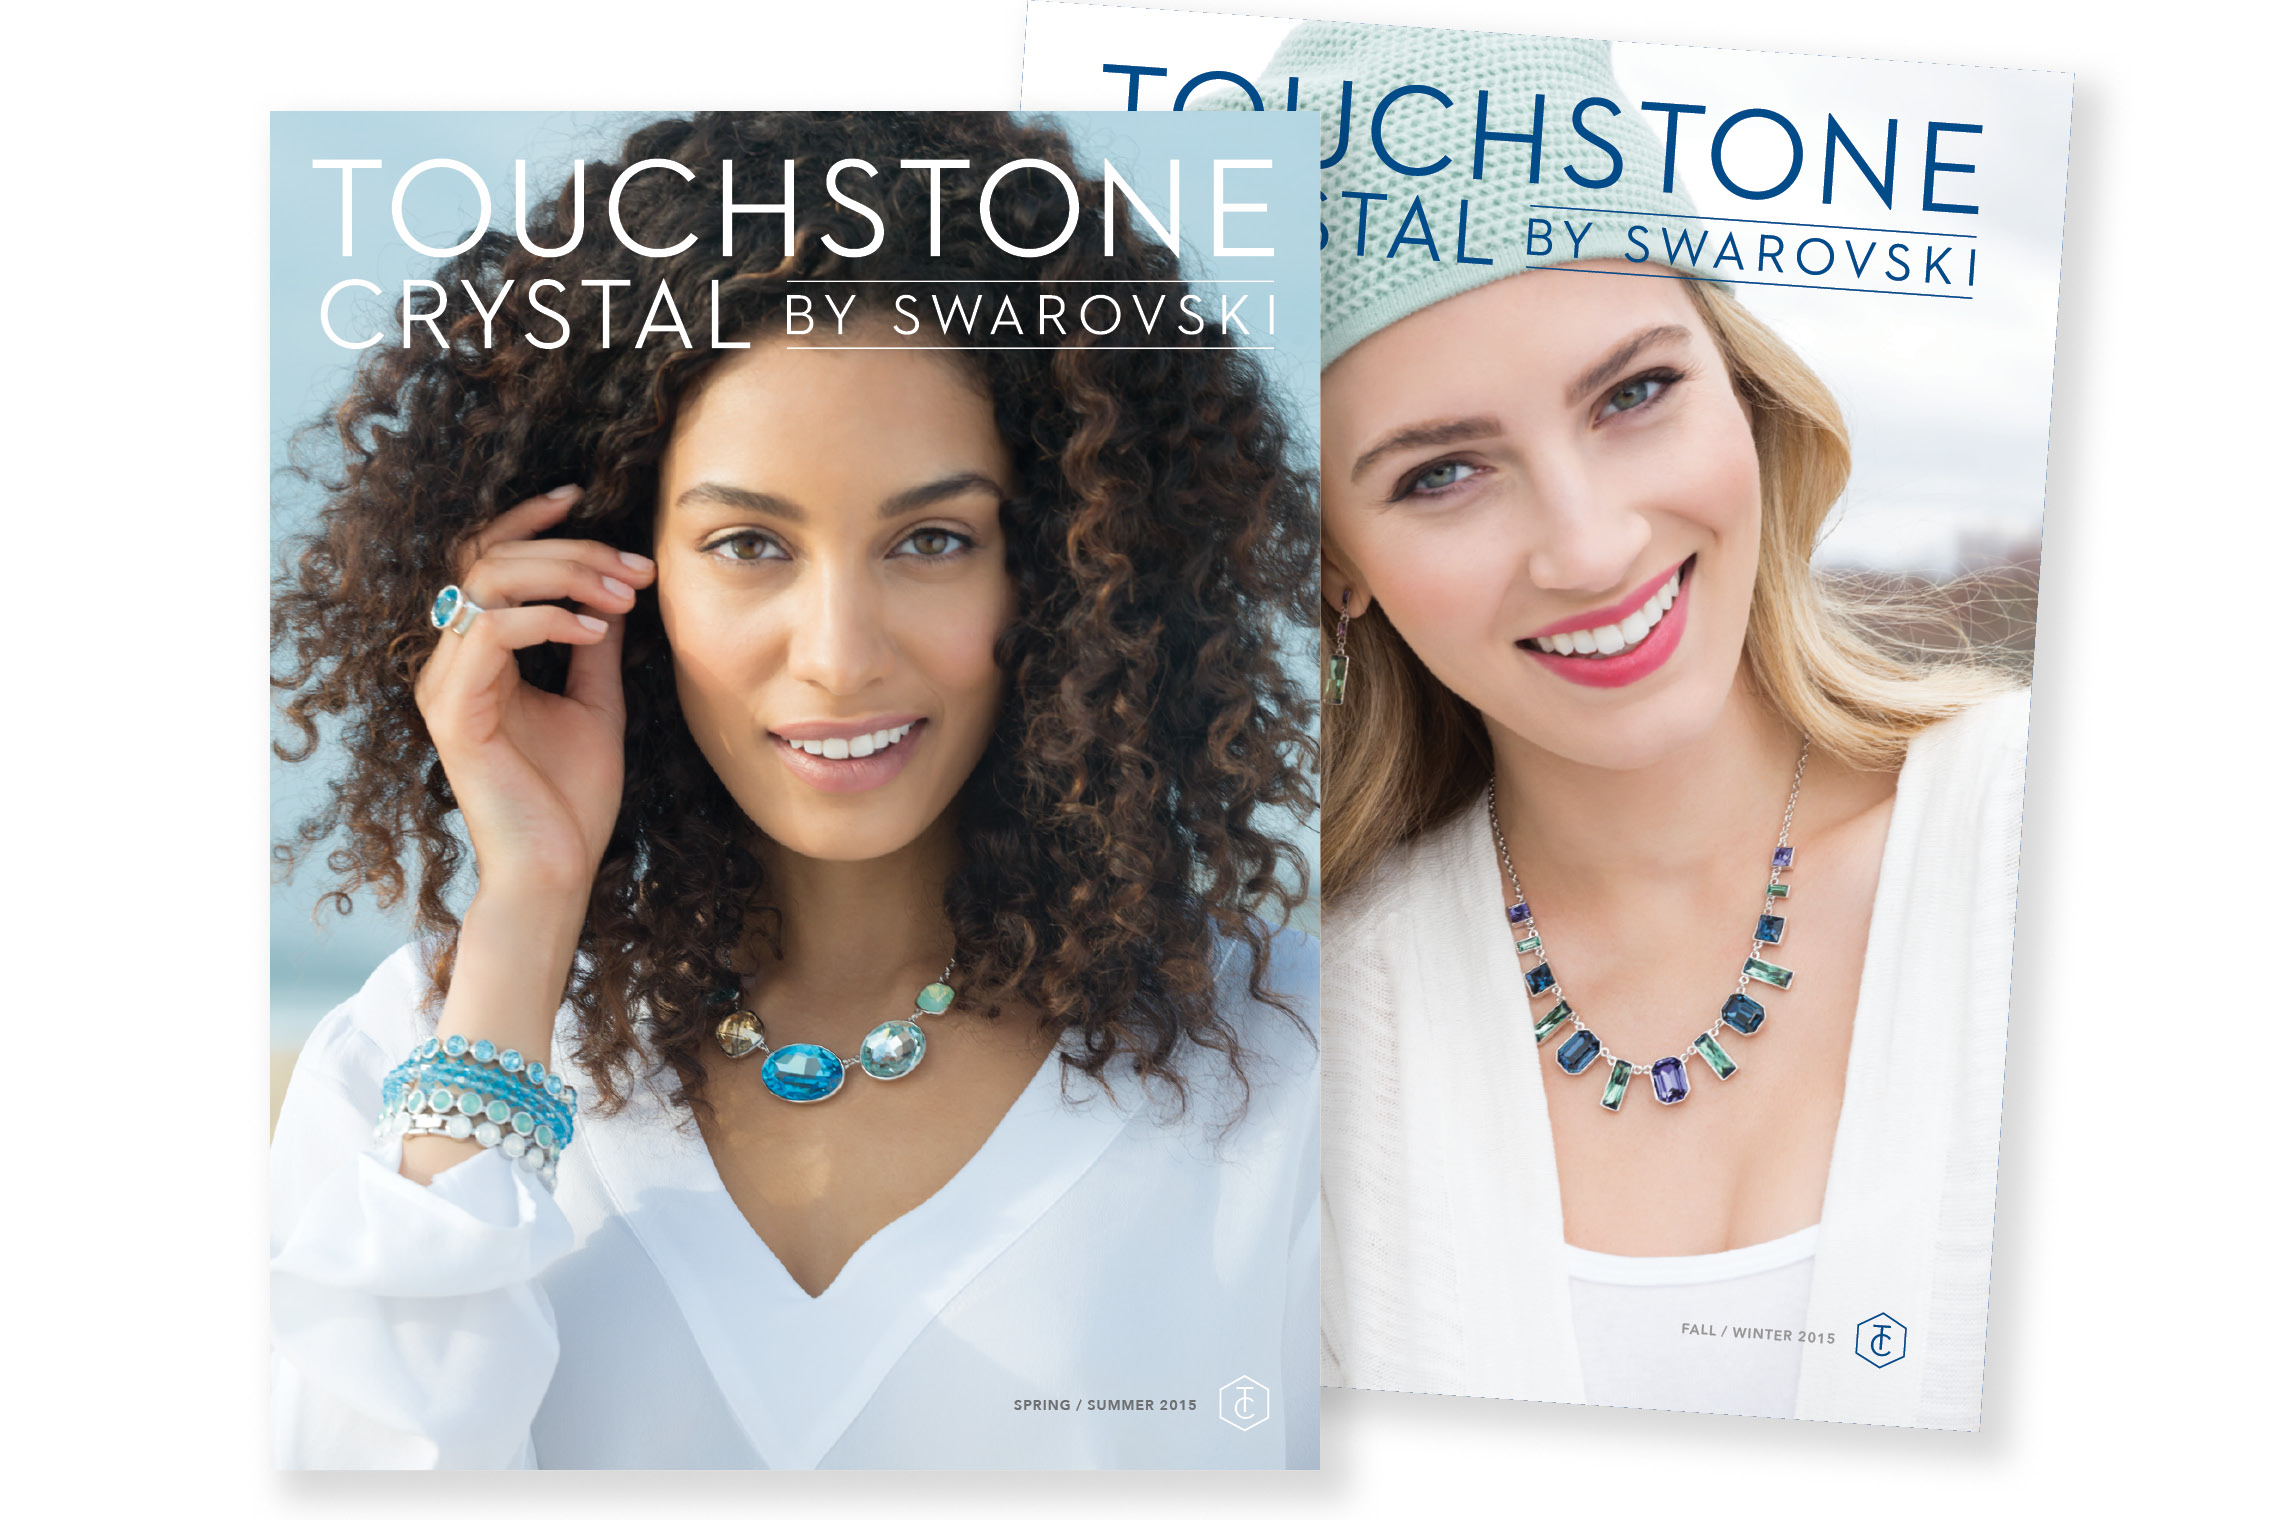 Touchstone Crystal by Swarovski